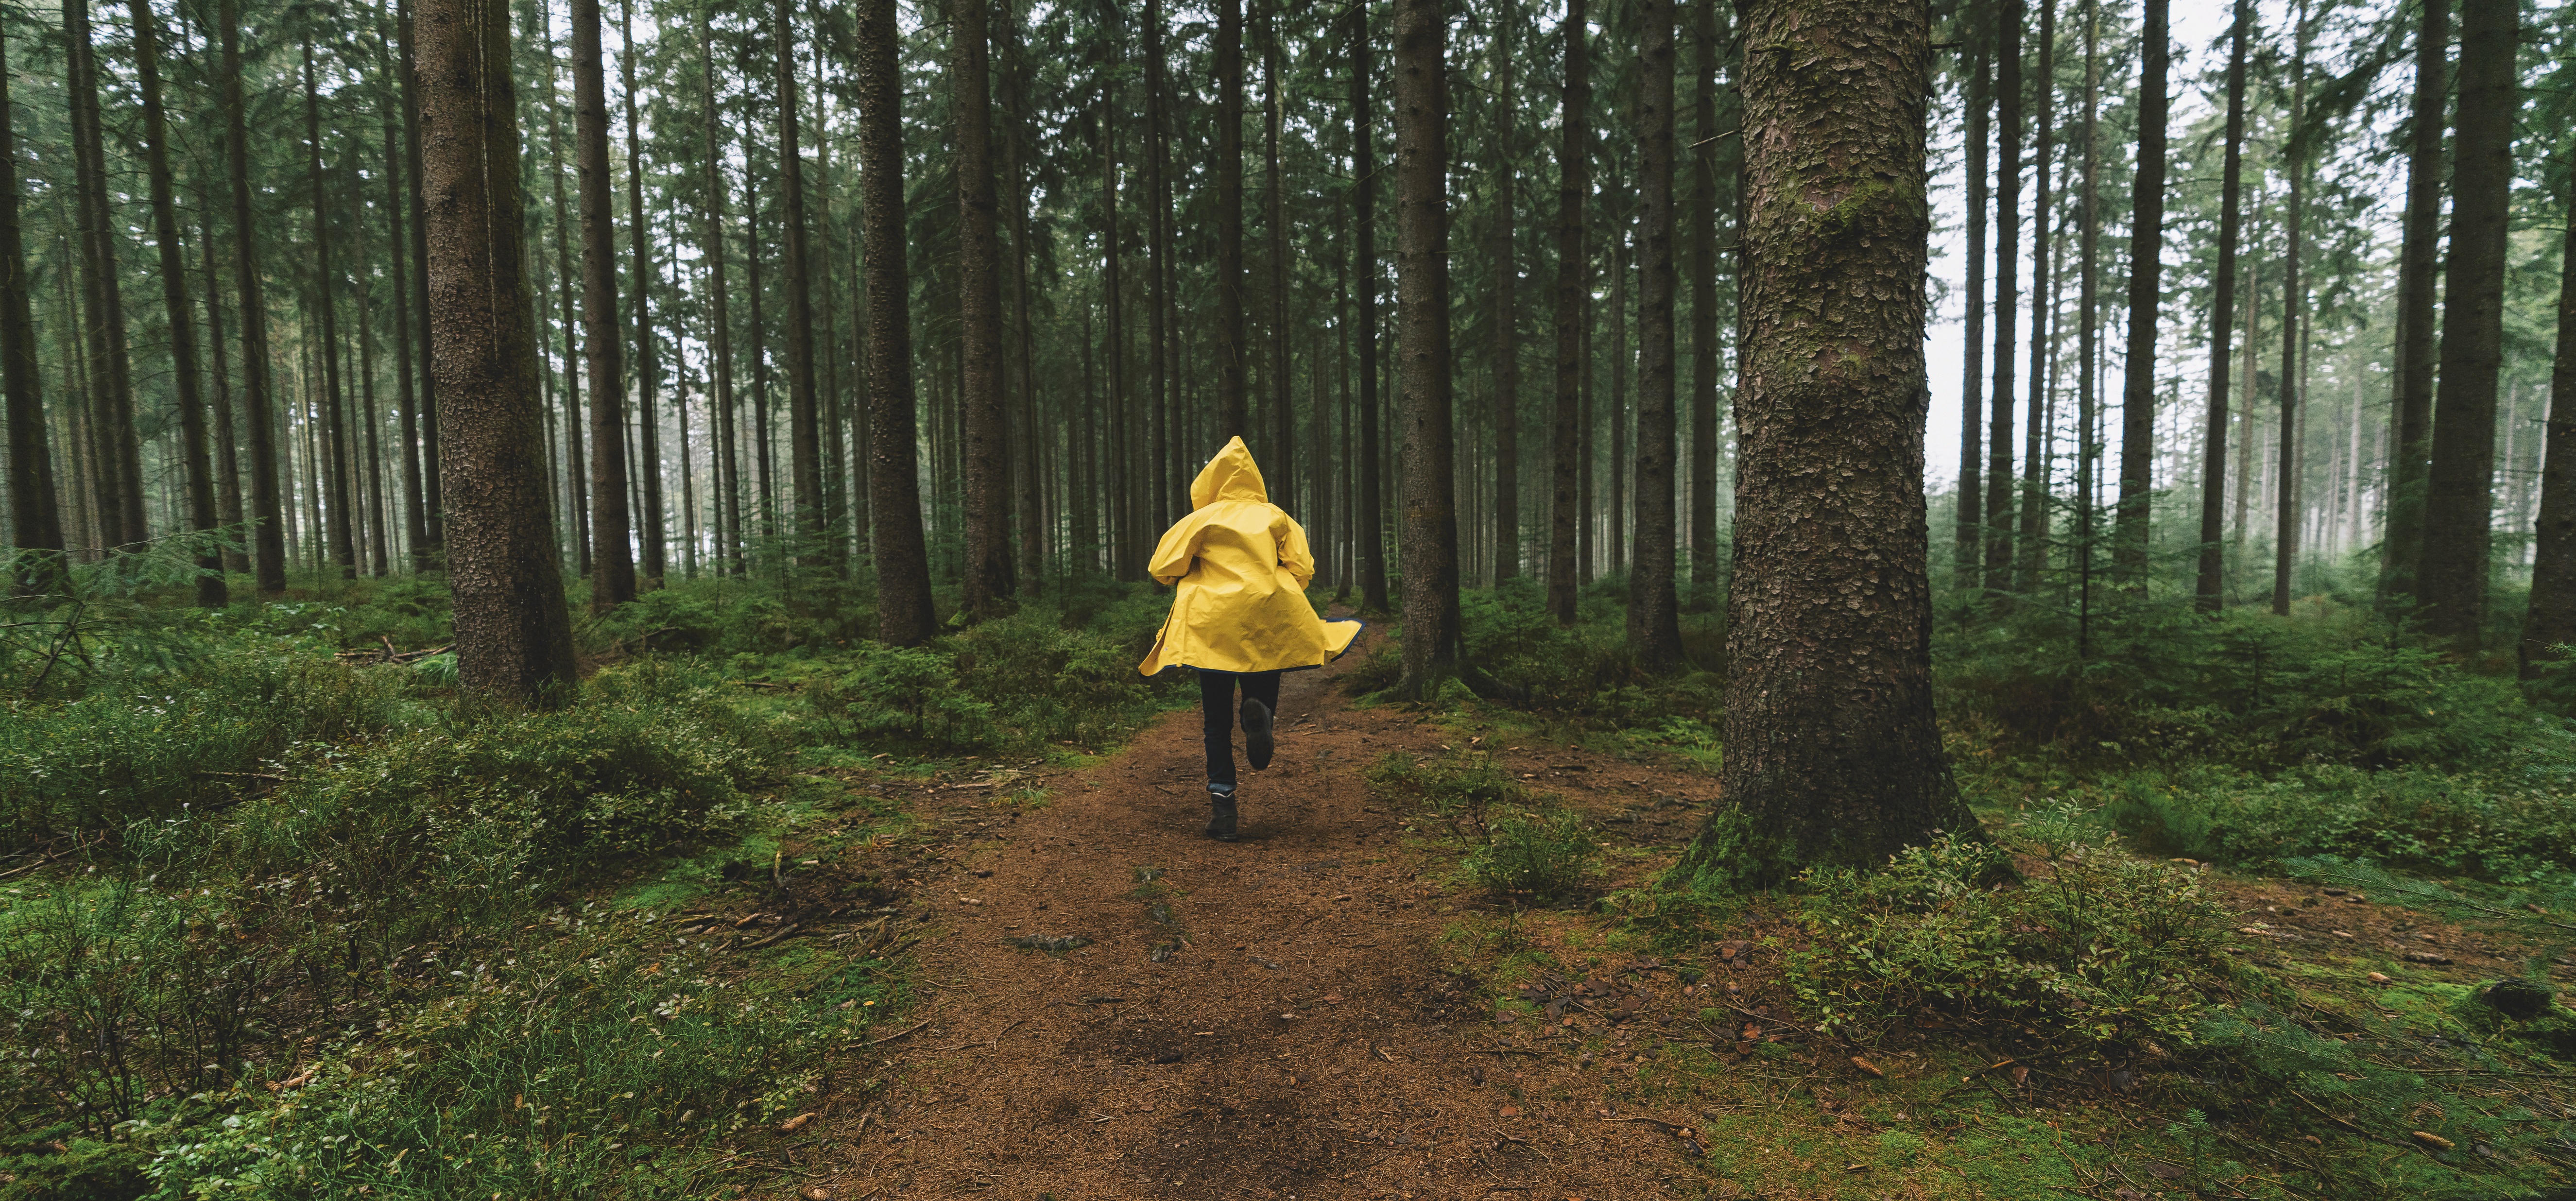 Un personnage, de dos, vêtu d'un ciré jaune court dans la forêt. Crédits photo: shutterstock